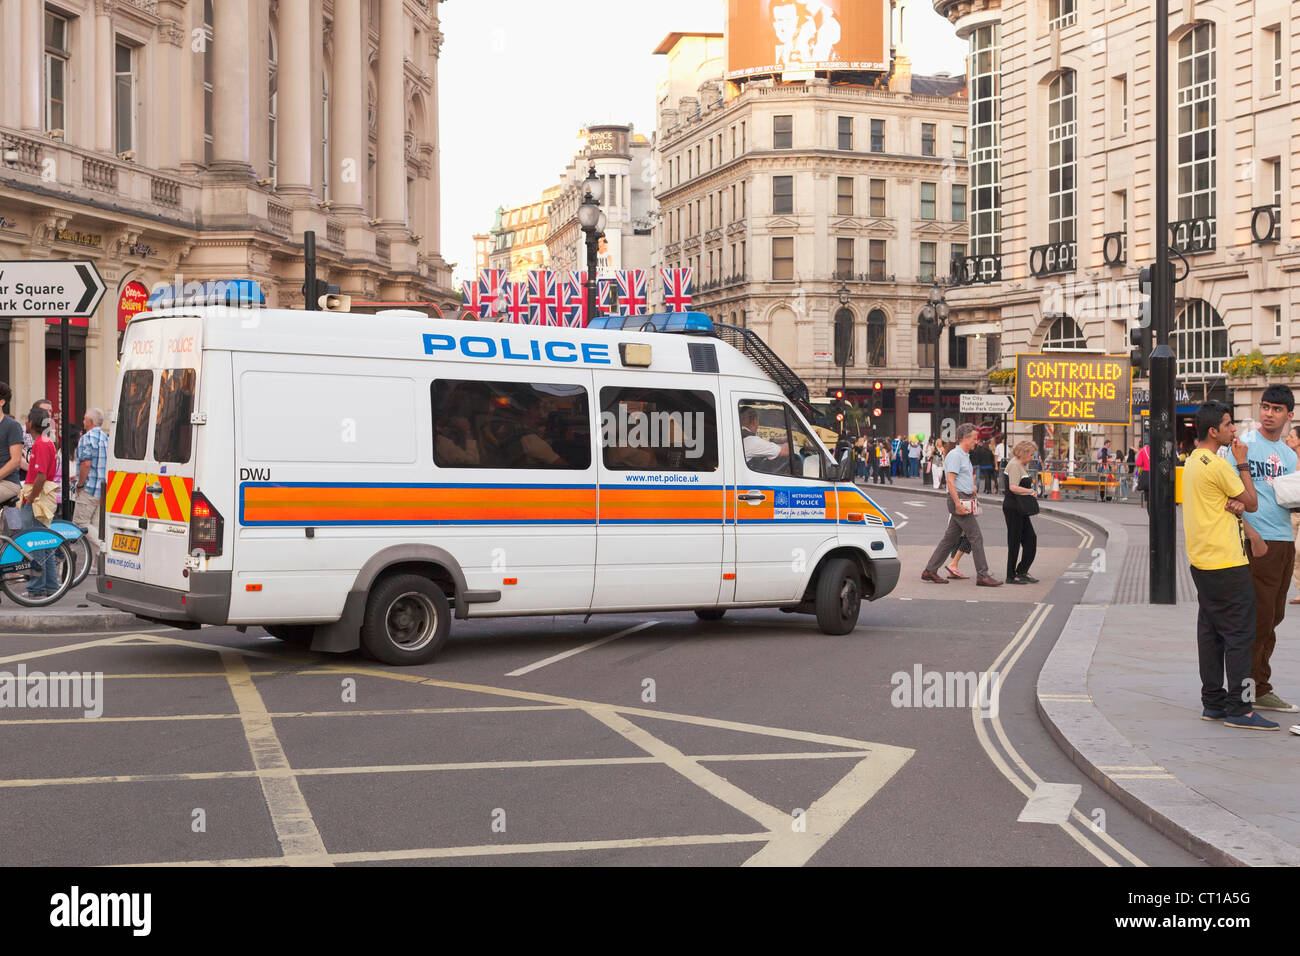 Police Mini Bus Van in central London, UK Stock Photo